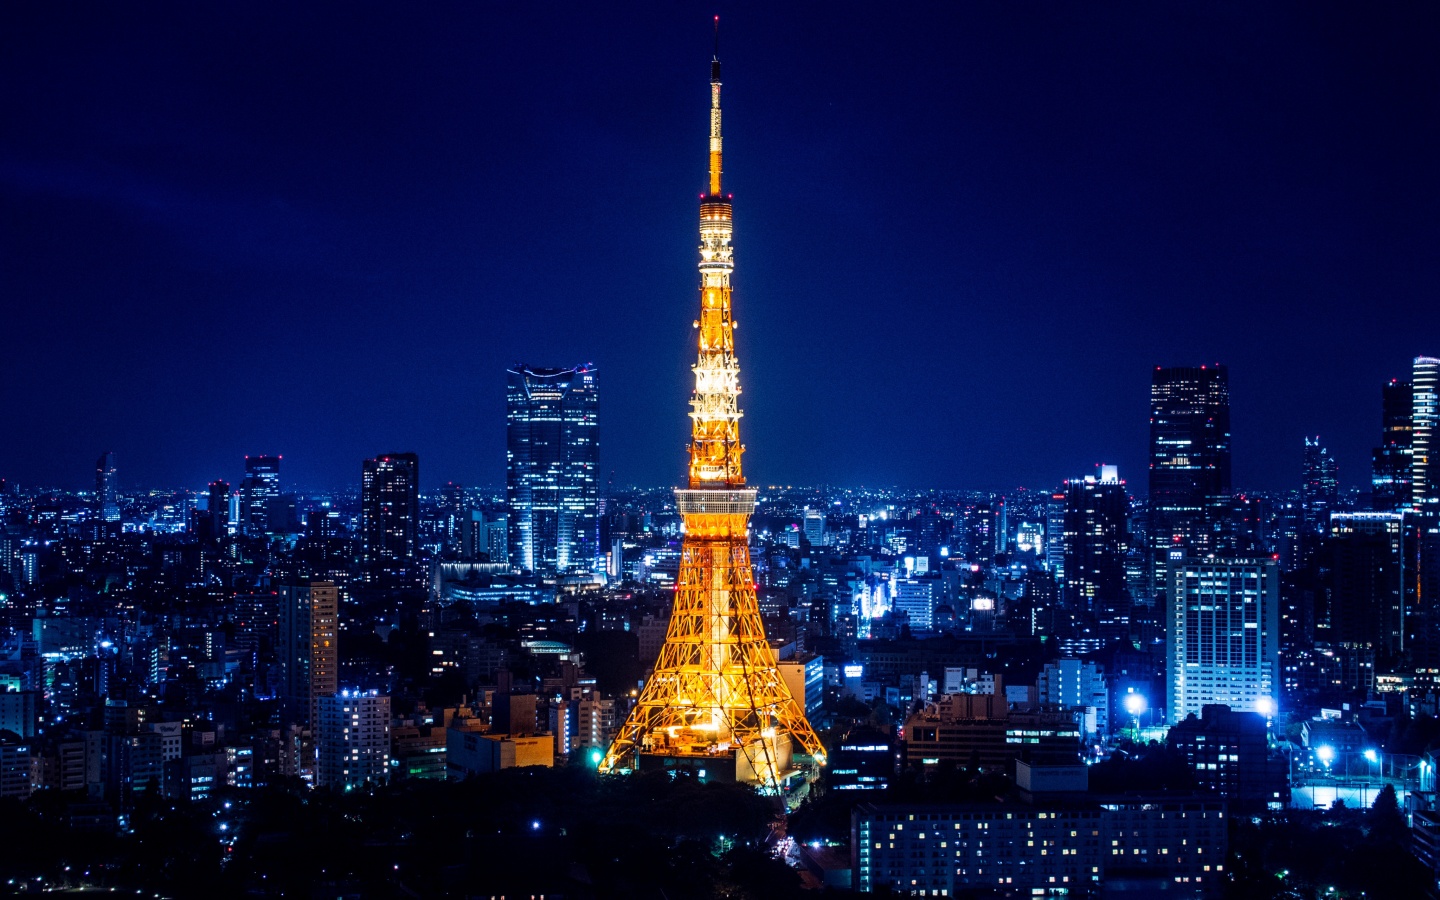 Tokyo Tower At Night